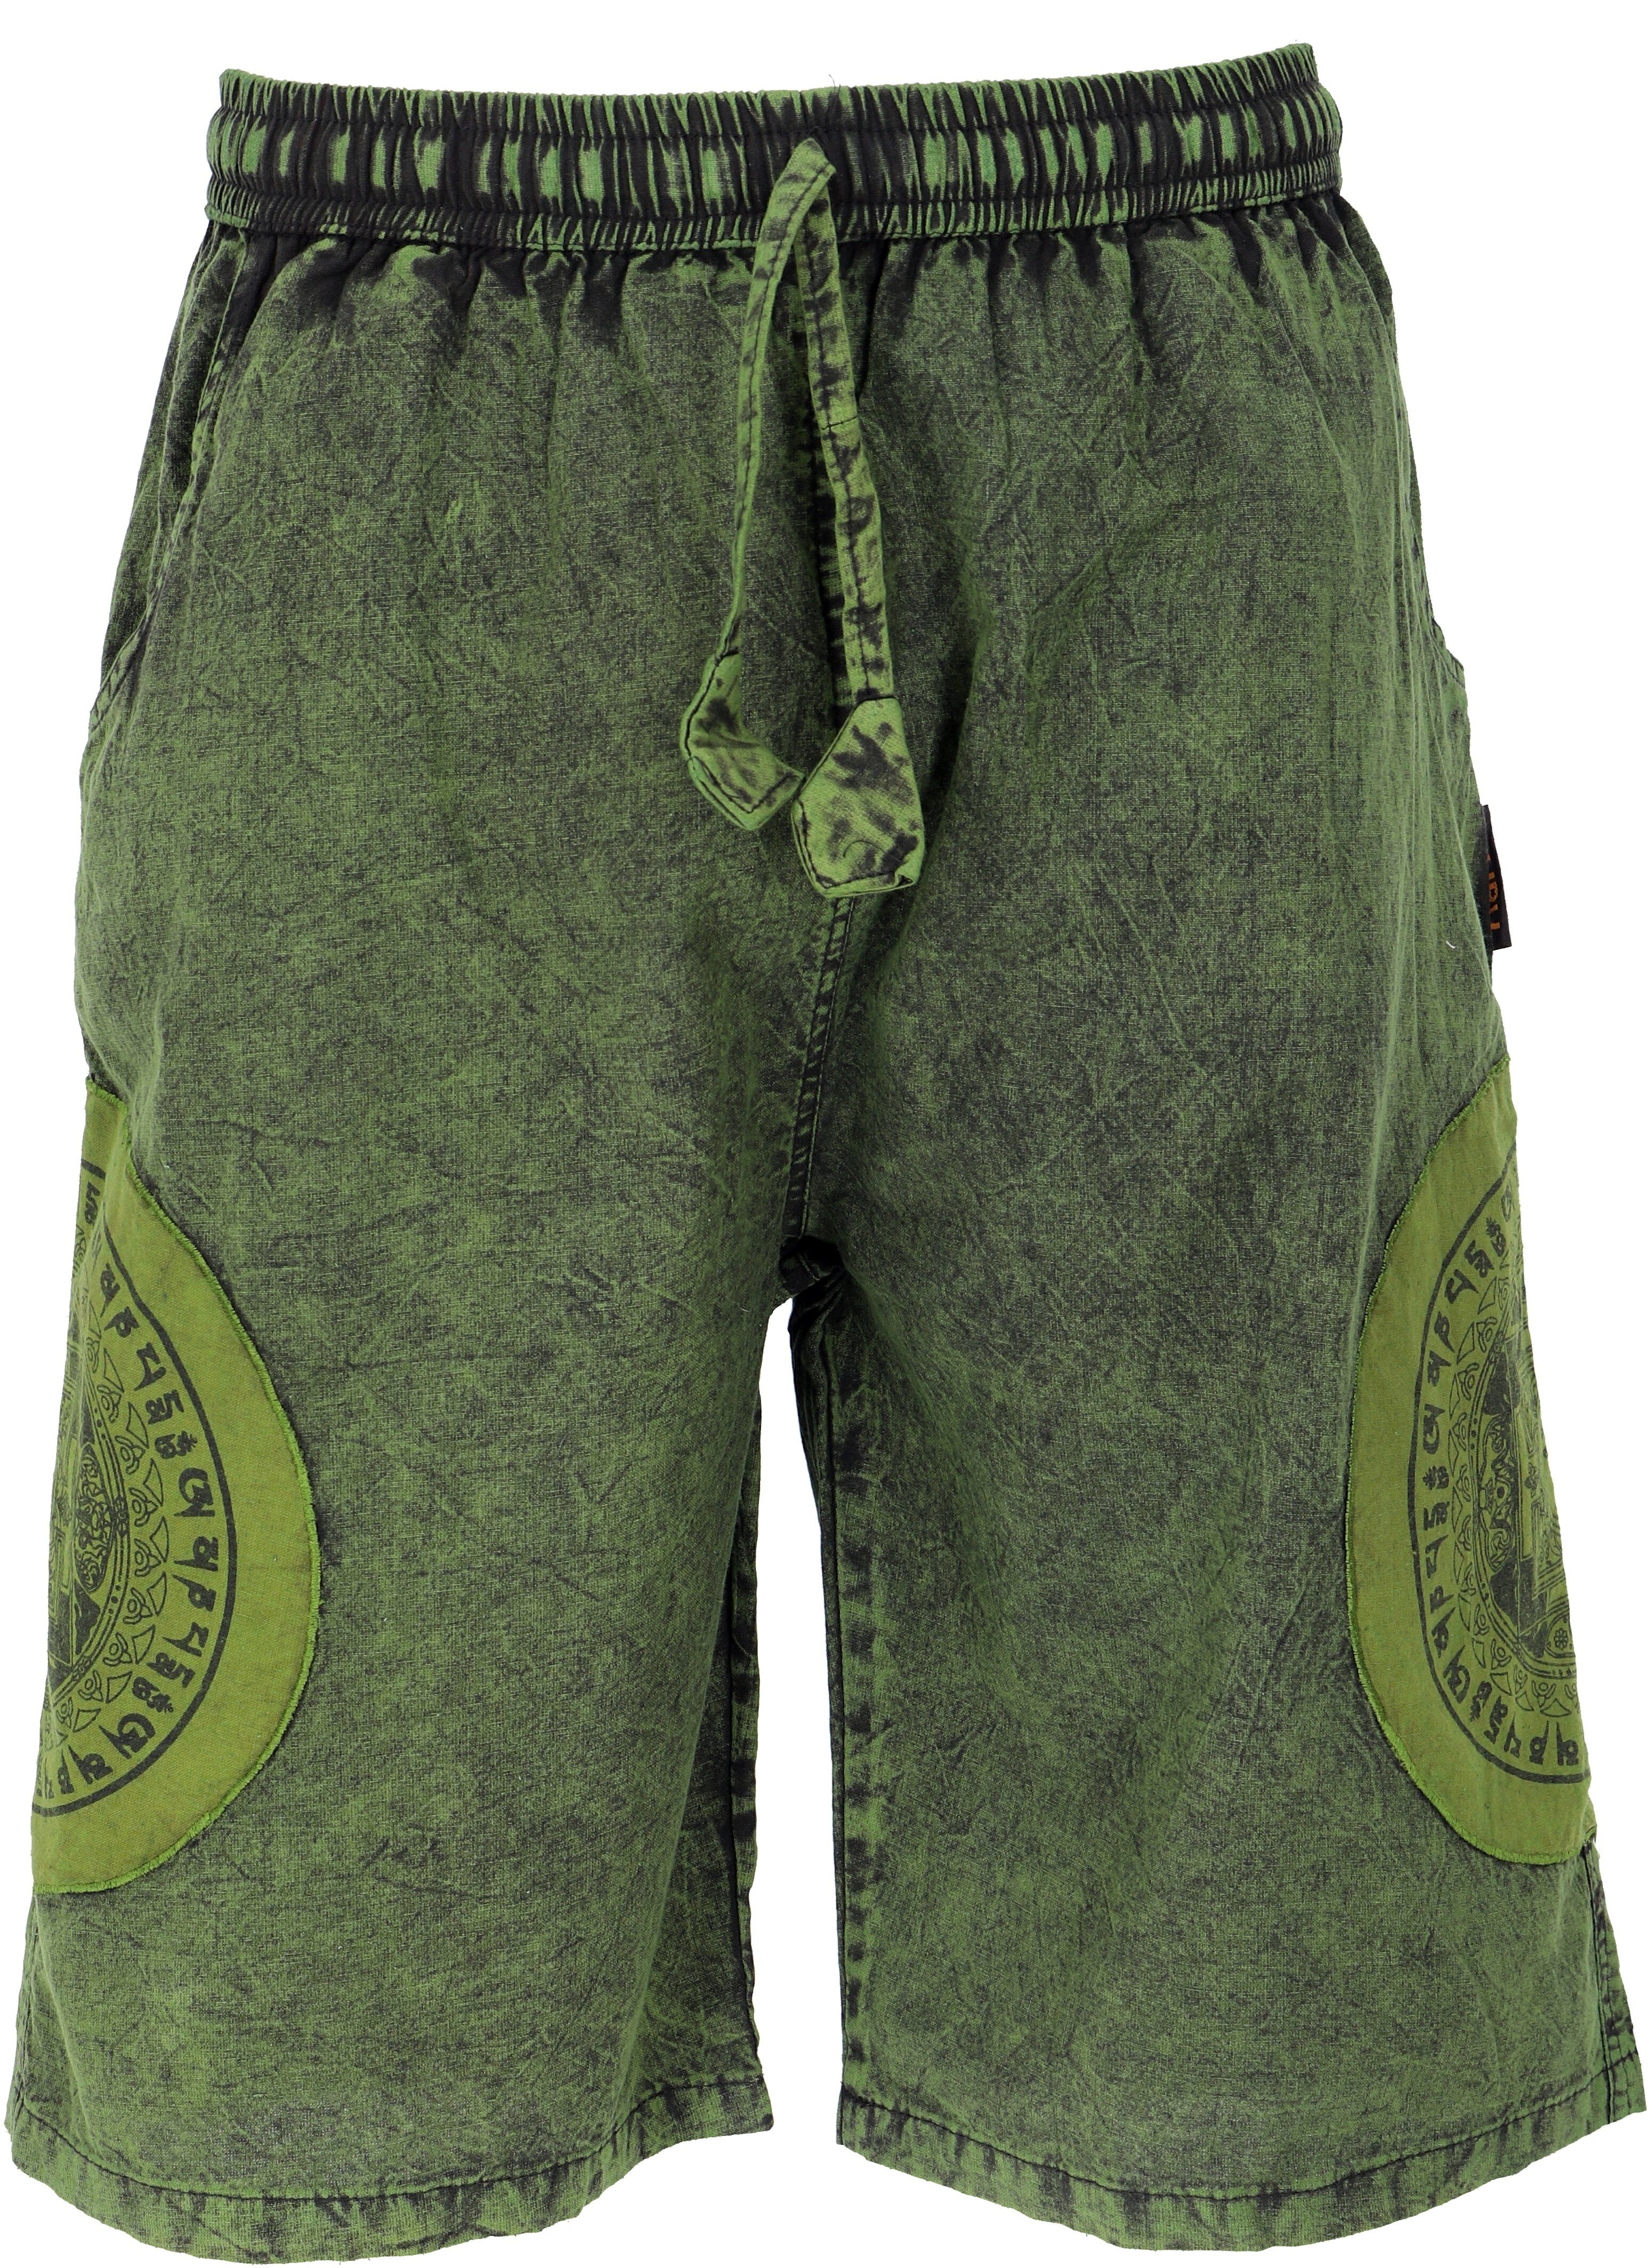 Yogashorts, Ethno Shorts.. alternative Stonwasch Guru-Shop Style, Hippie, grün Bekleidung Relaxhose Ethno Patchwork